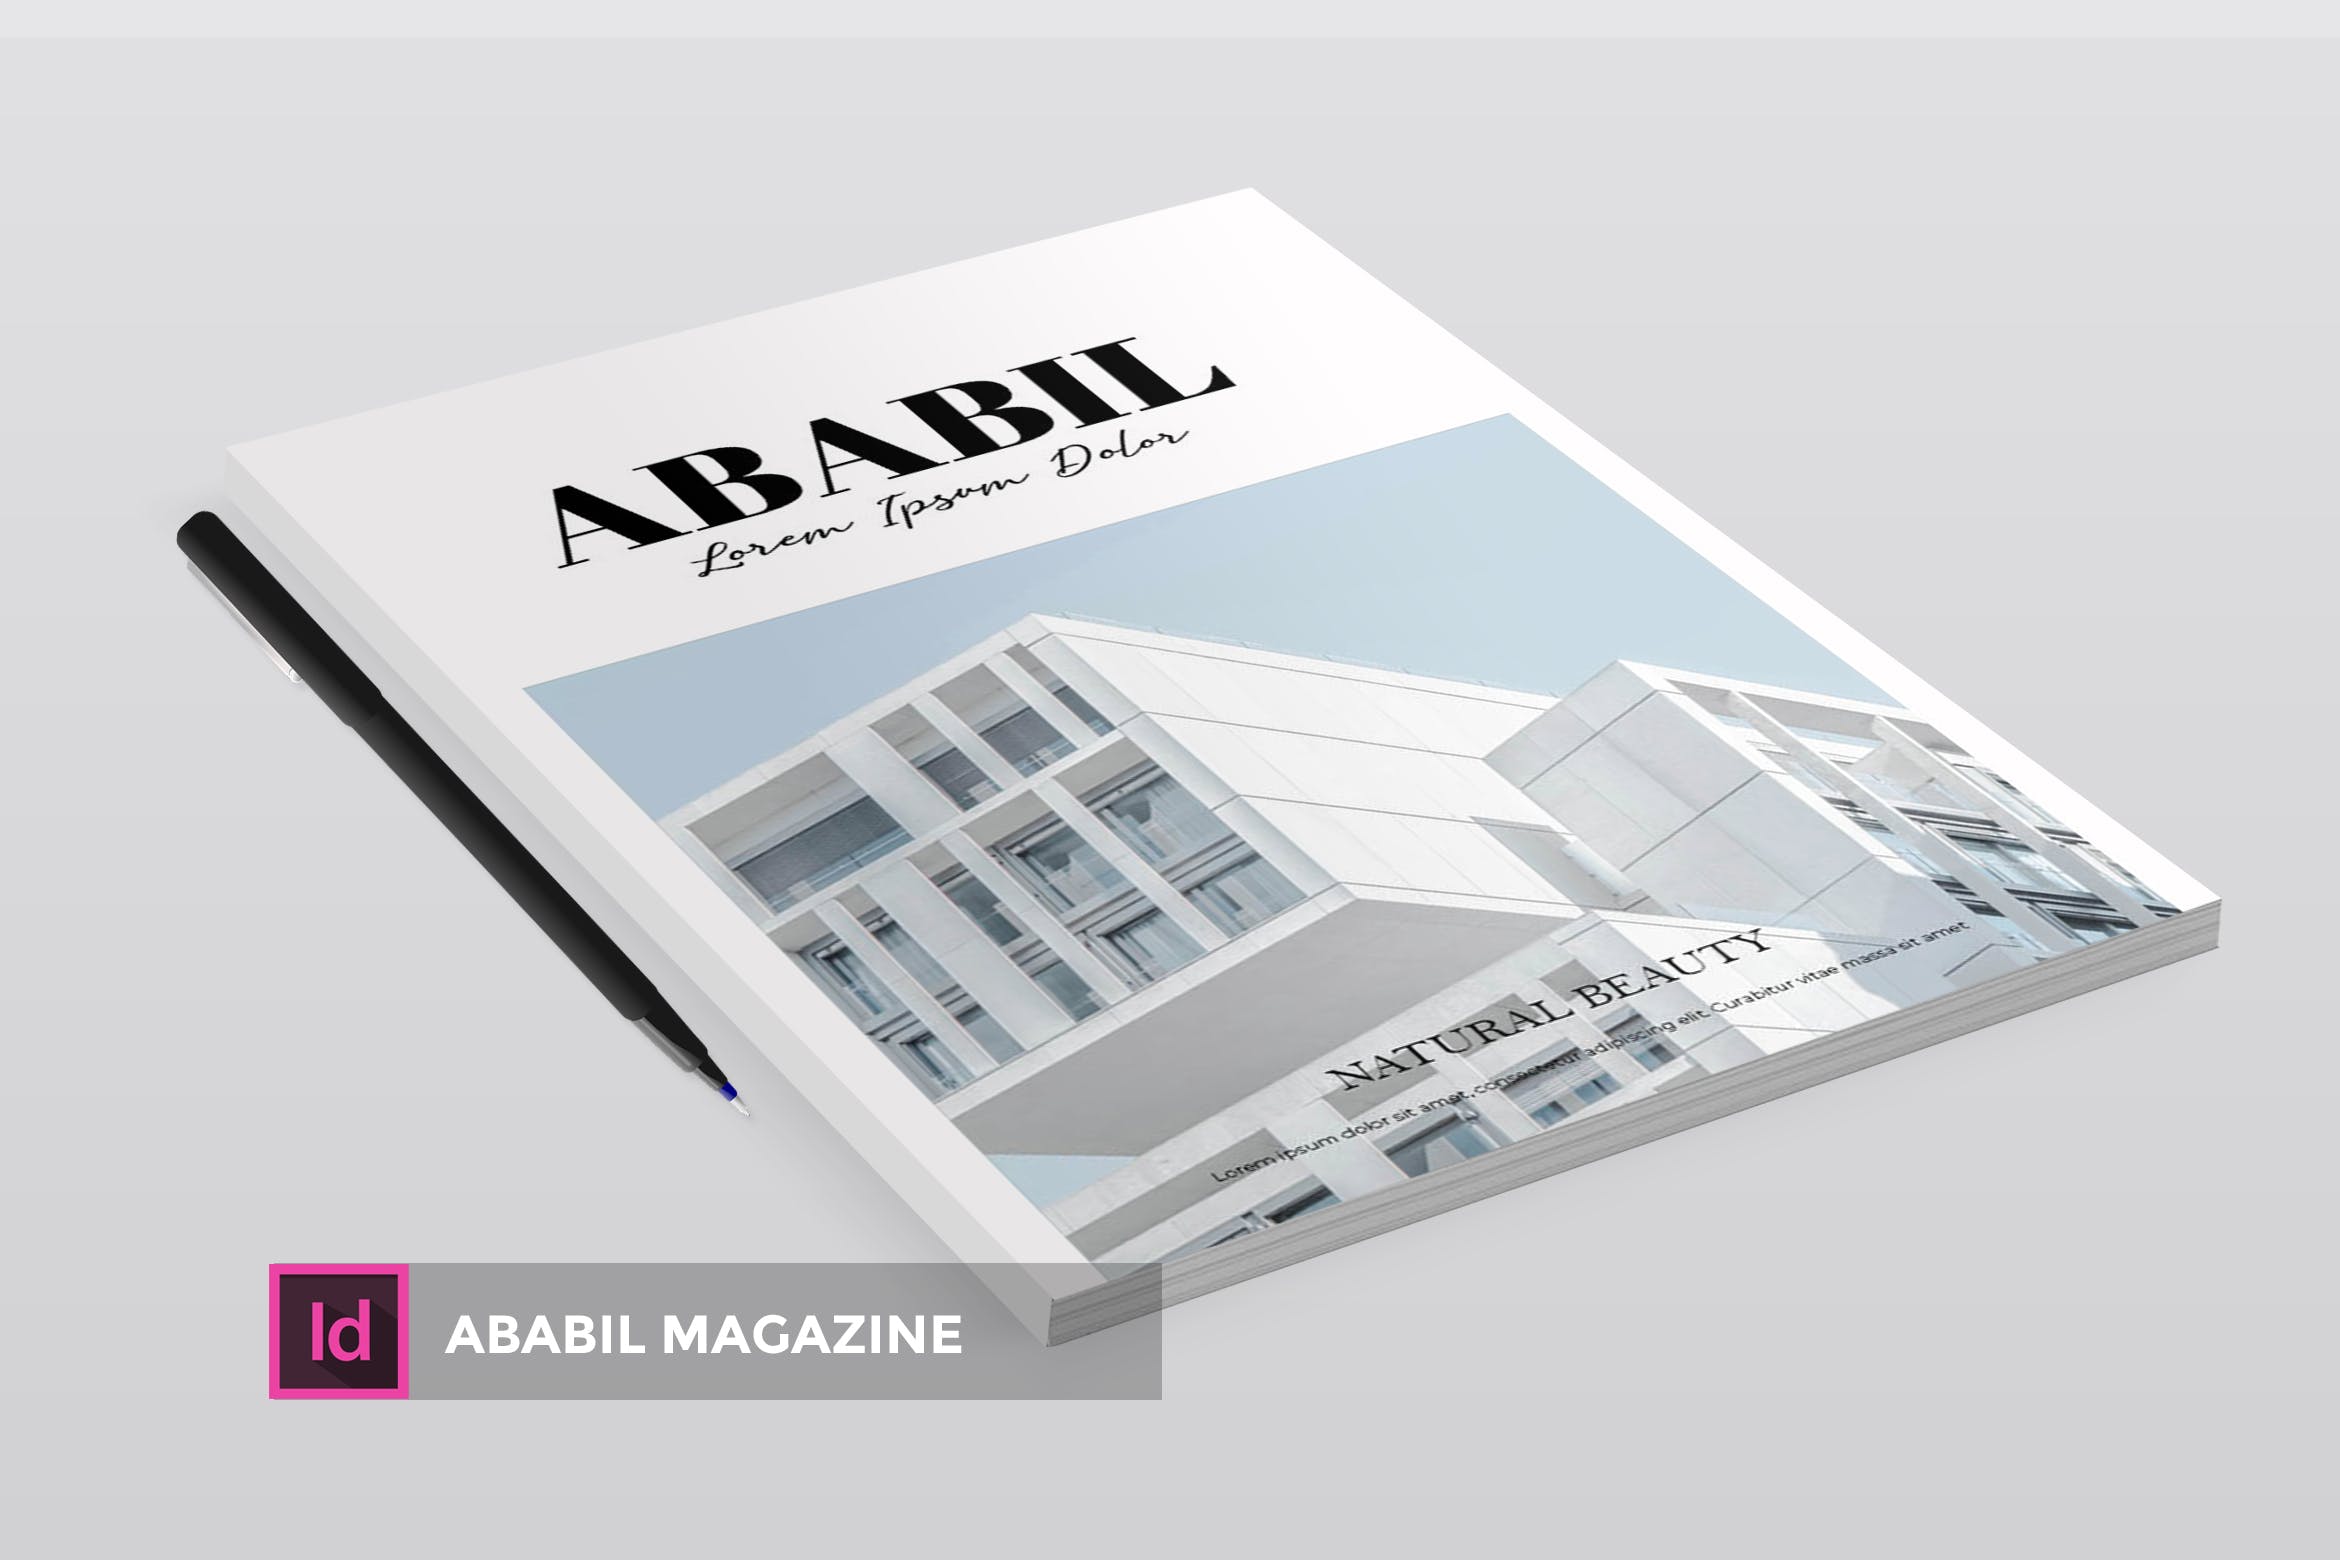 高端建筑/设计/房地产主题16设计网精选杂志排版设计INDD模板 ABABIL | Magazine Template插图